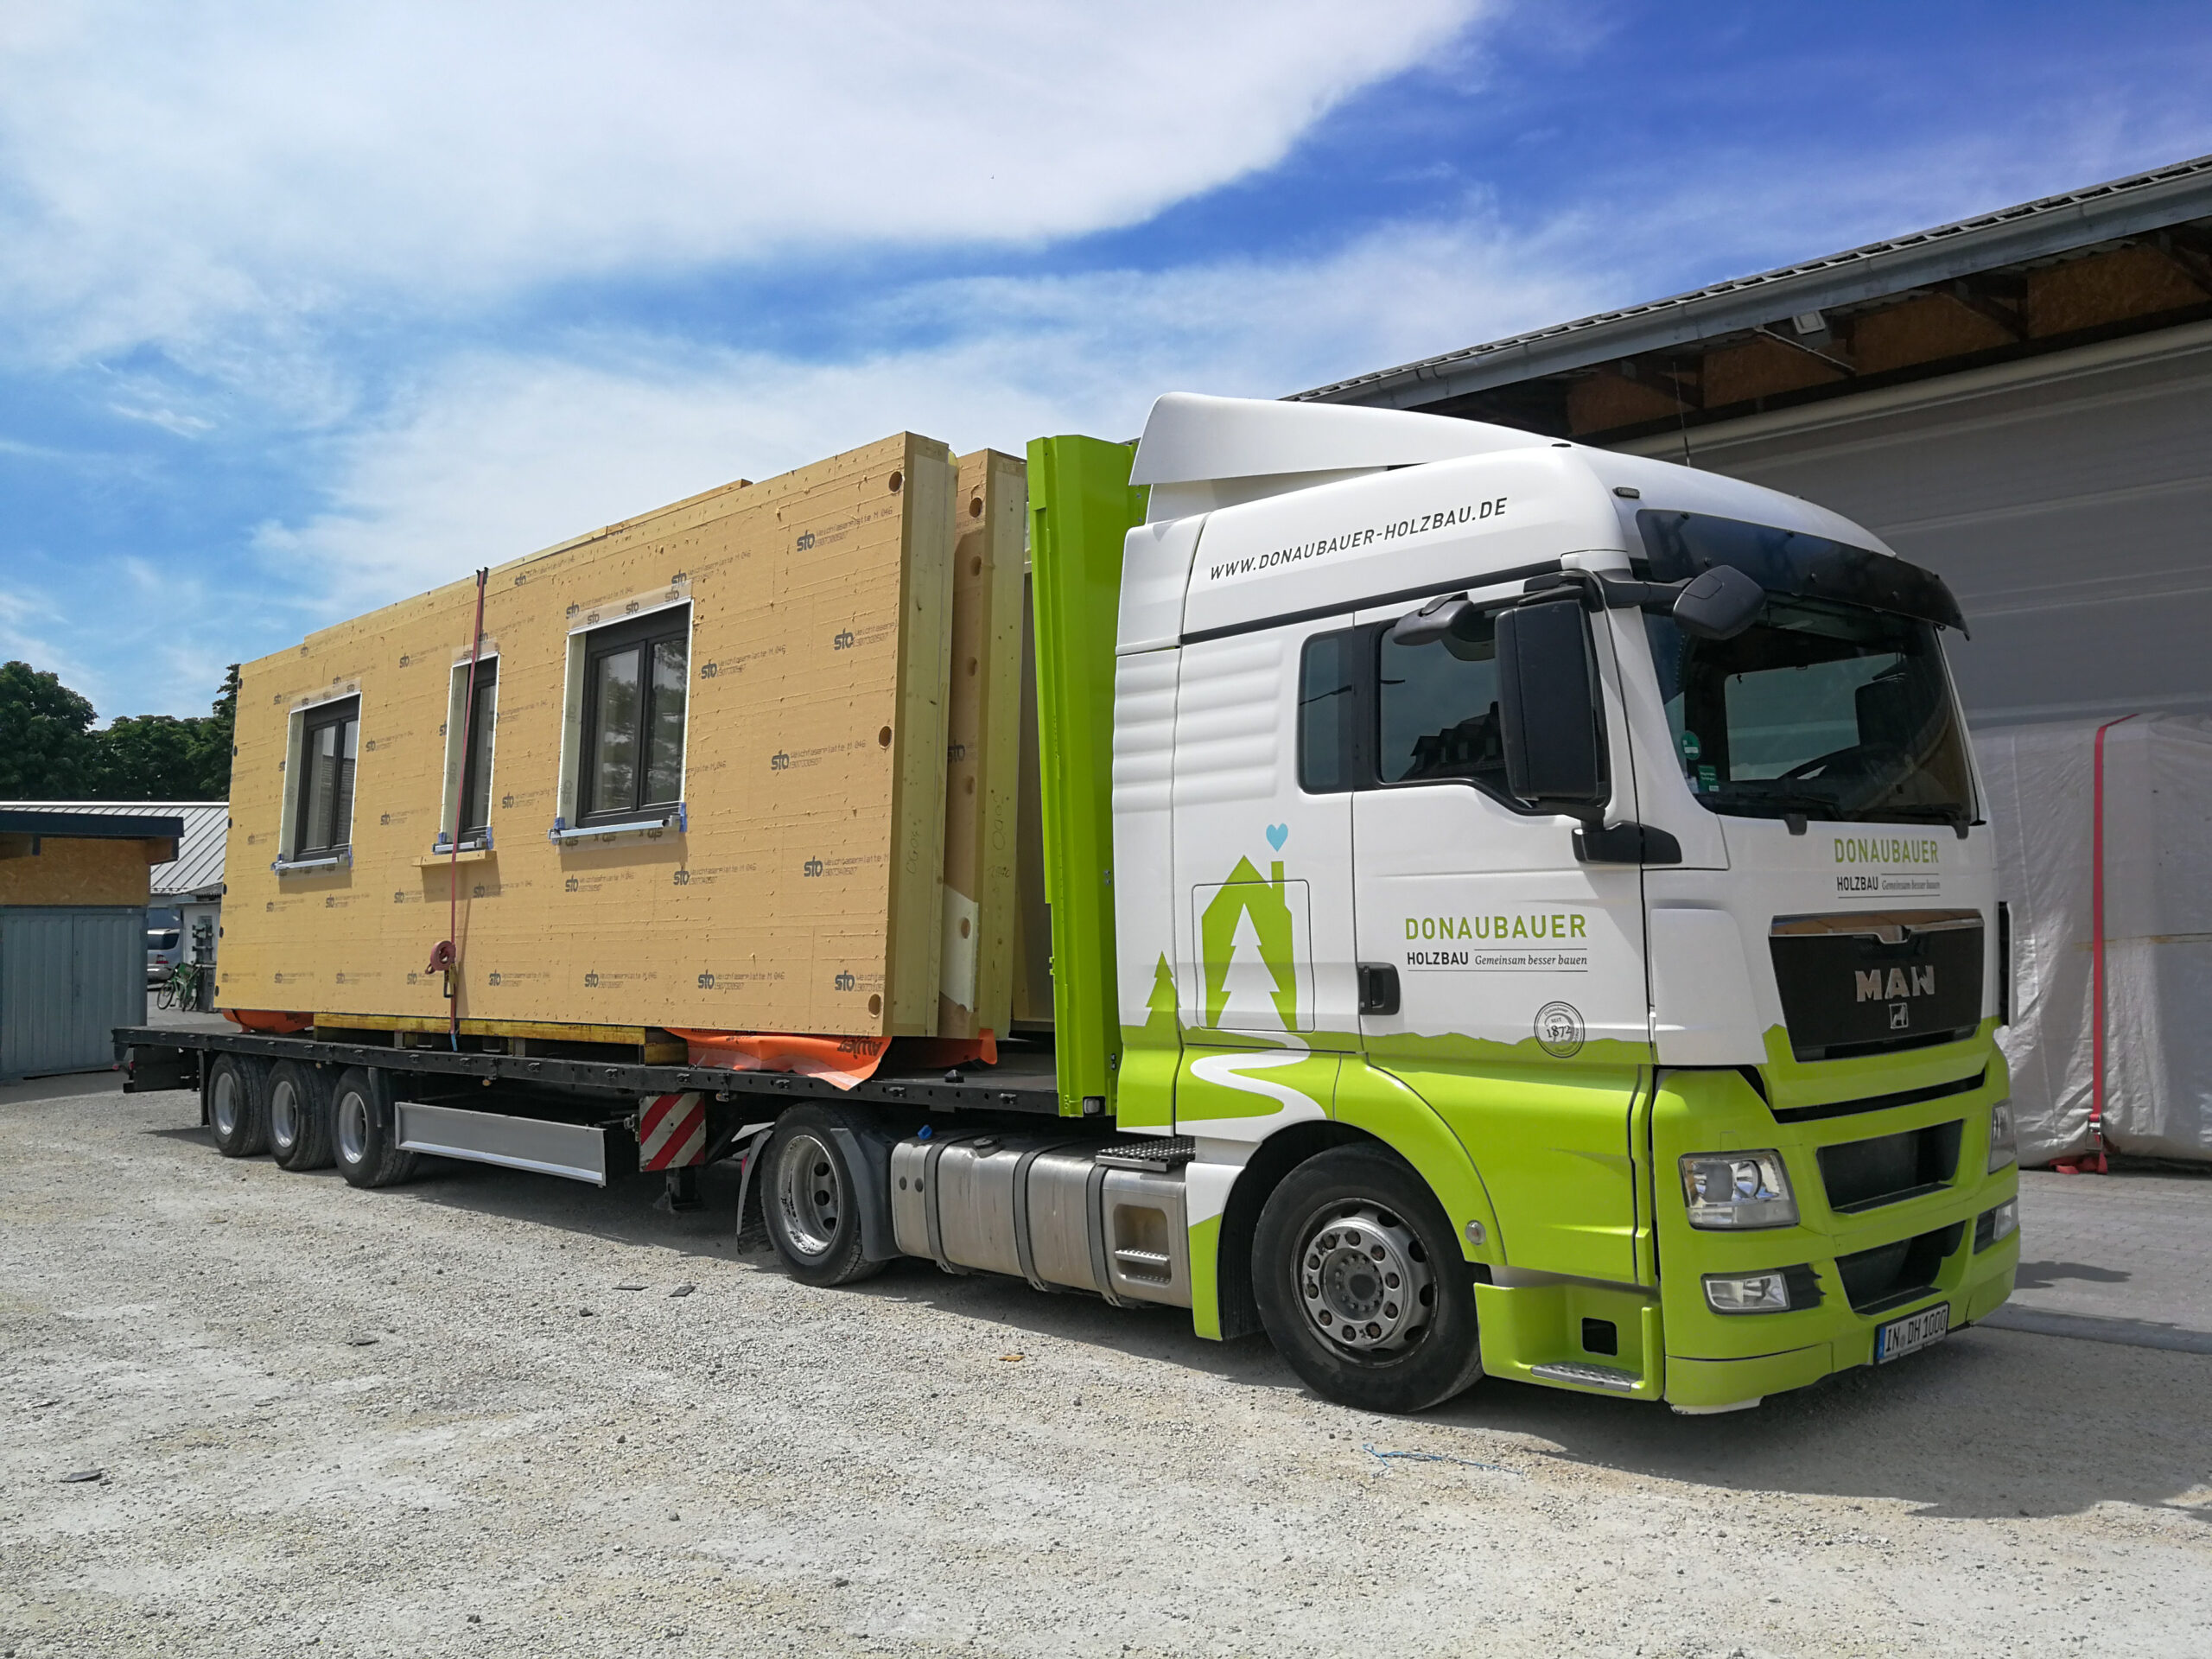 Lastwagen mit Donaubauer Holzbau Branding und aufgeladenen Wandelementen eines Holzhauses